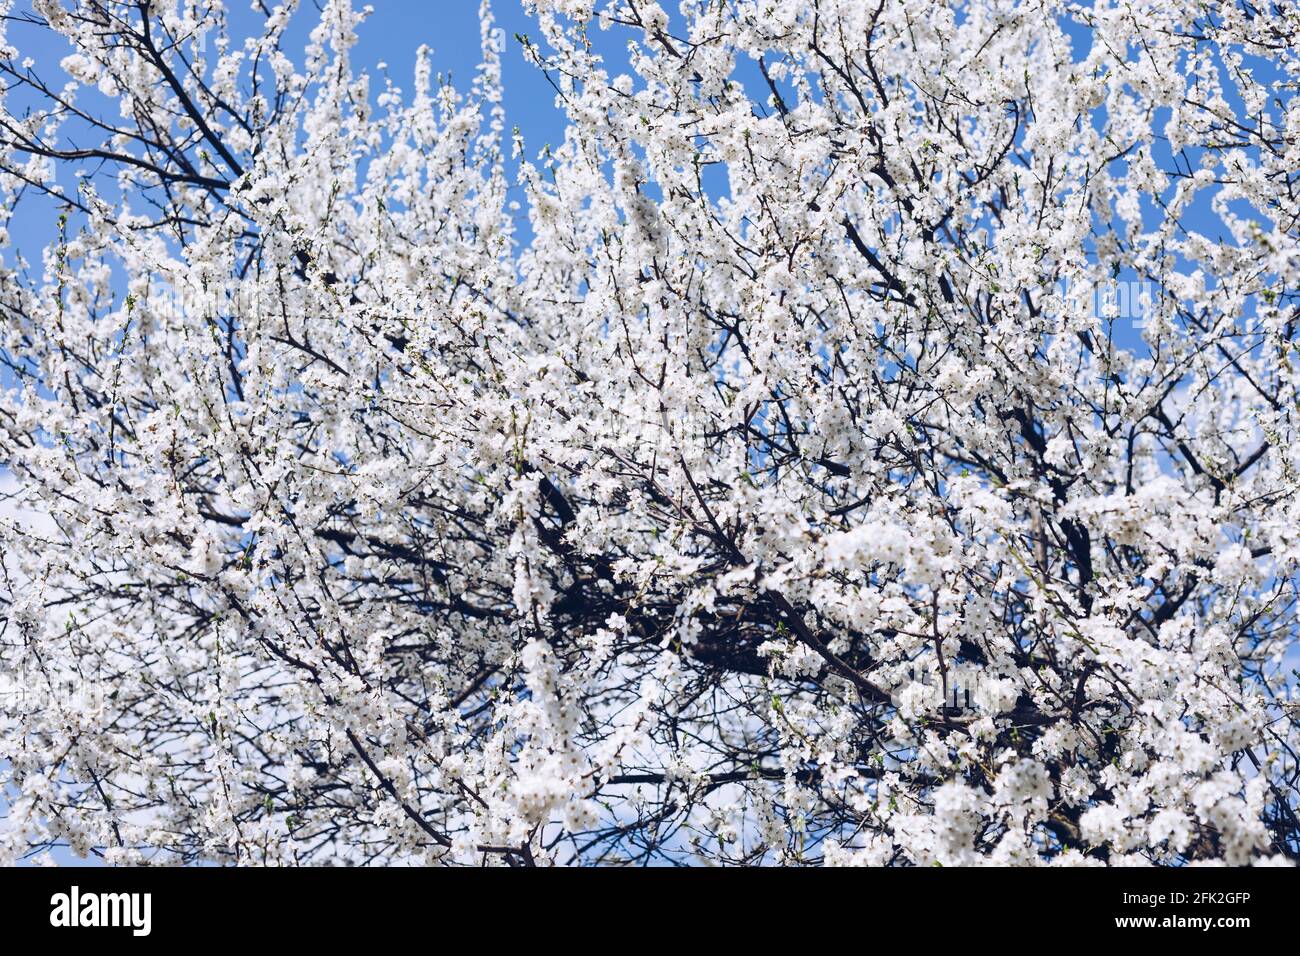 Feder Grenze oder Hintergrund Kunst mit rosa Blüten. Schöne Natur Szene mit blühenden Baum und Sonne Flare. Ostern sonniger Tag. Frühling Blumen. Beautifu Stockfoto